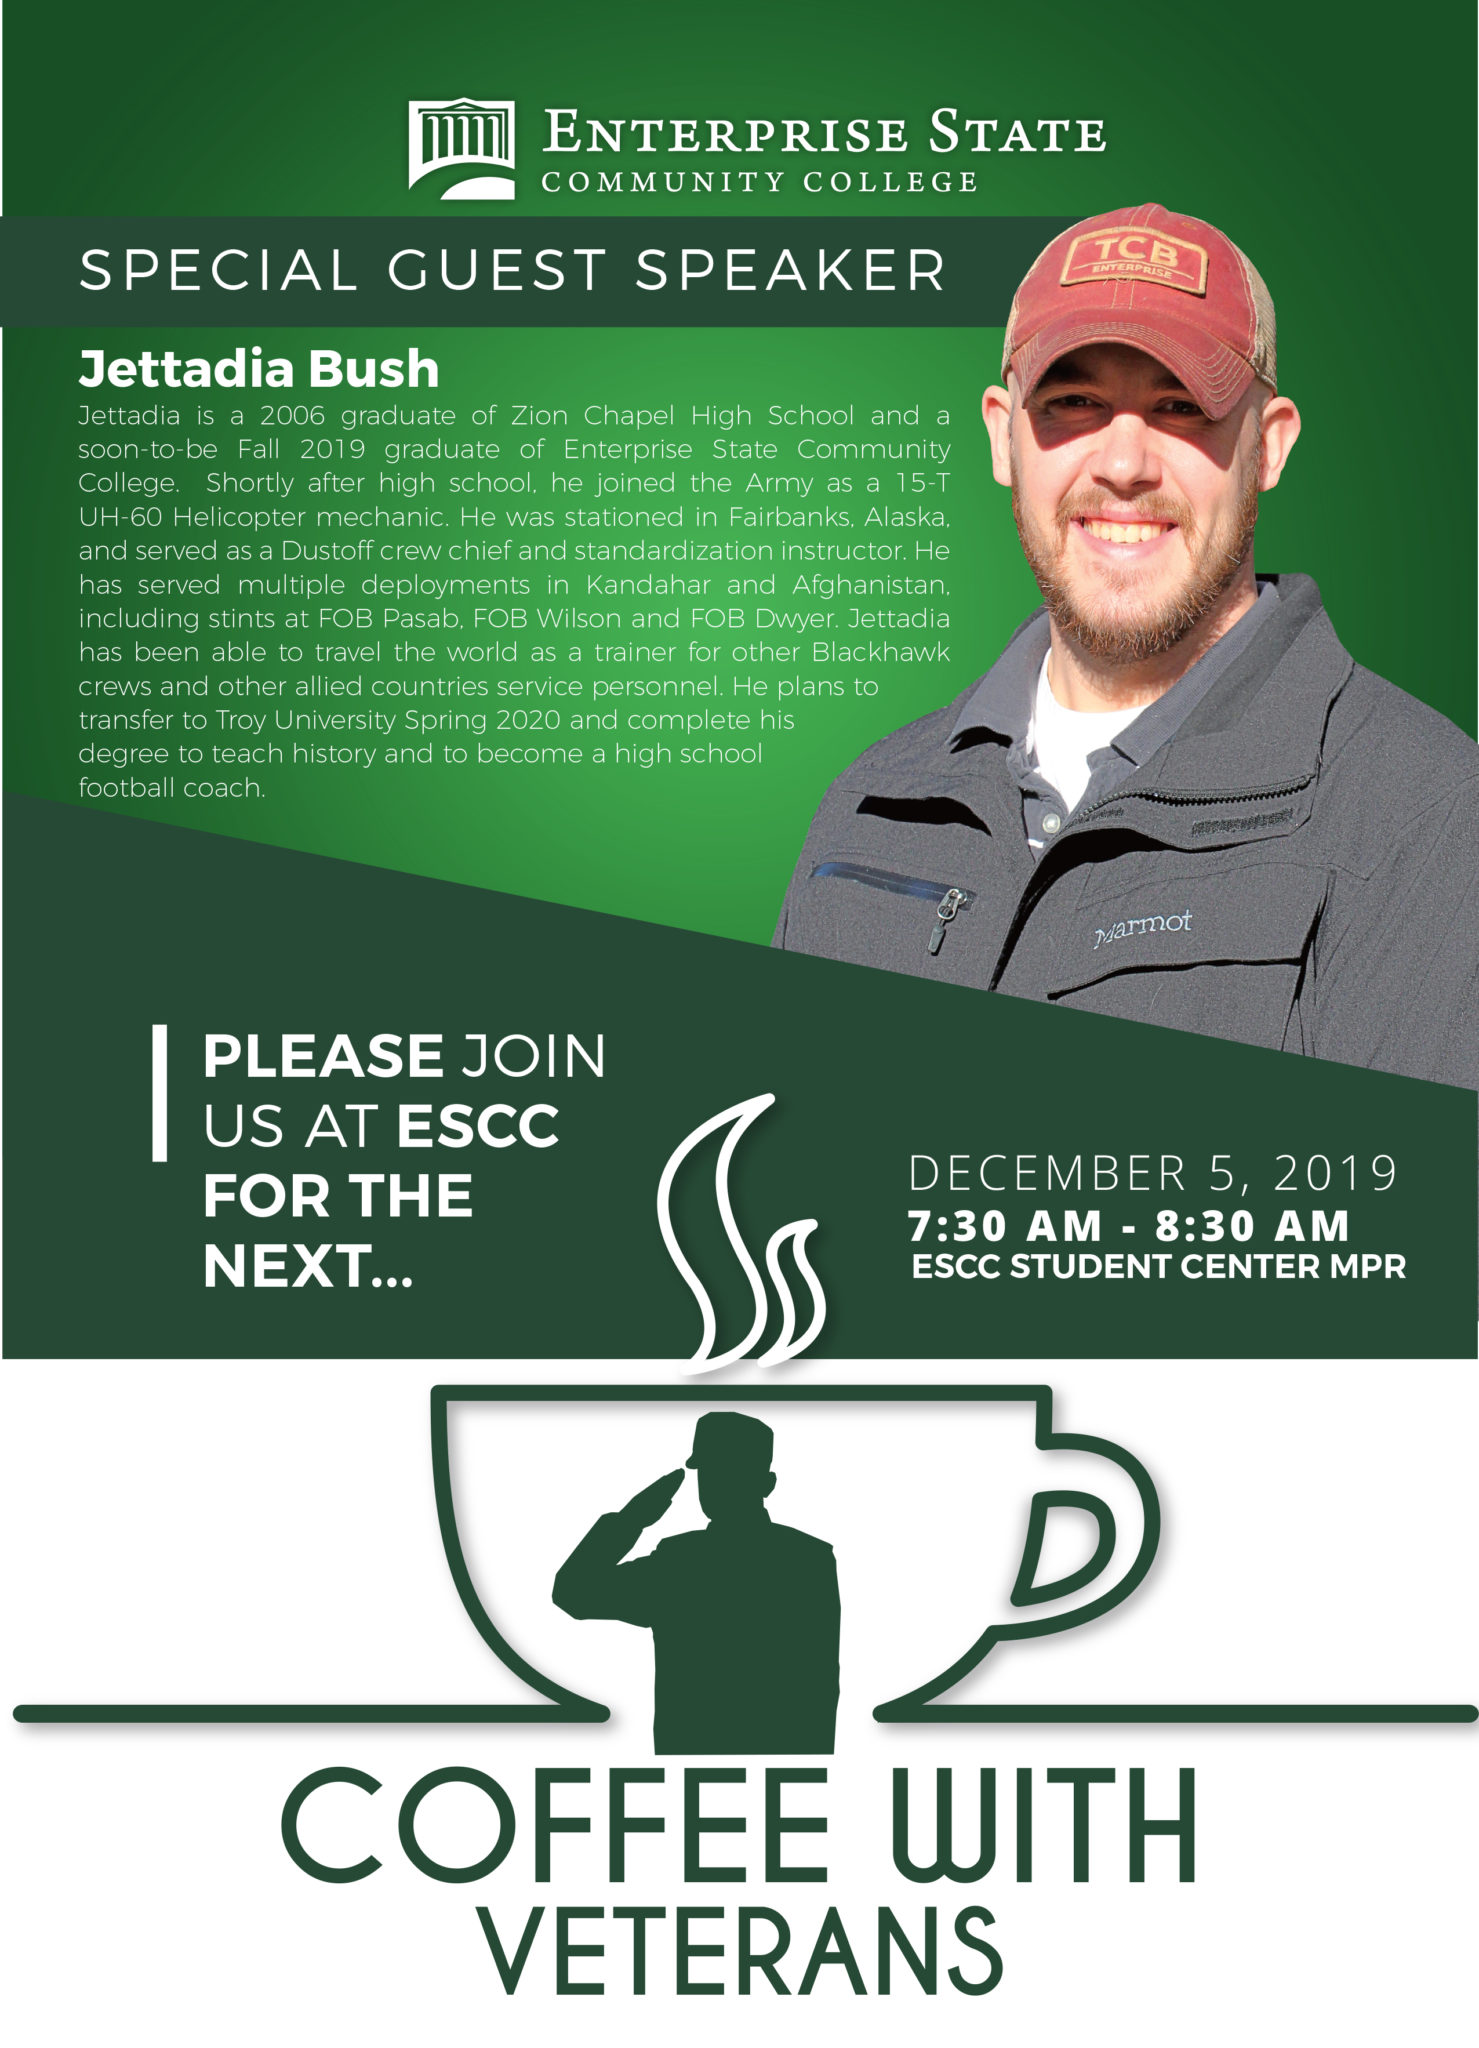 Coffee with Veterans program